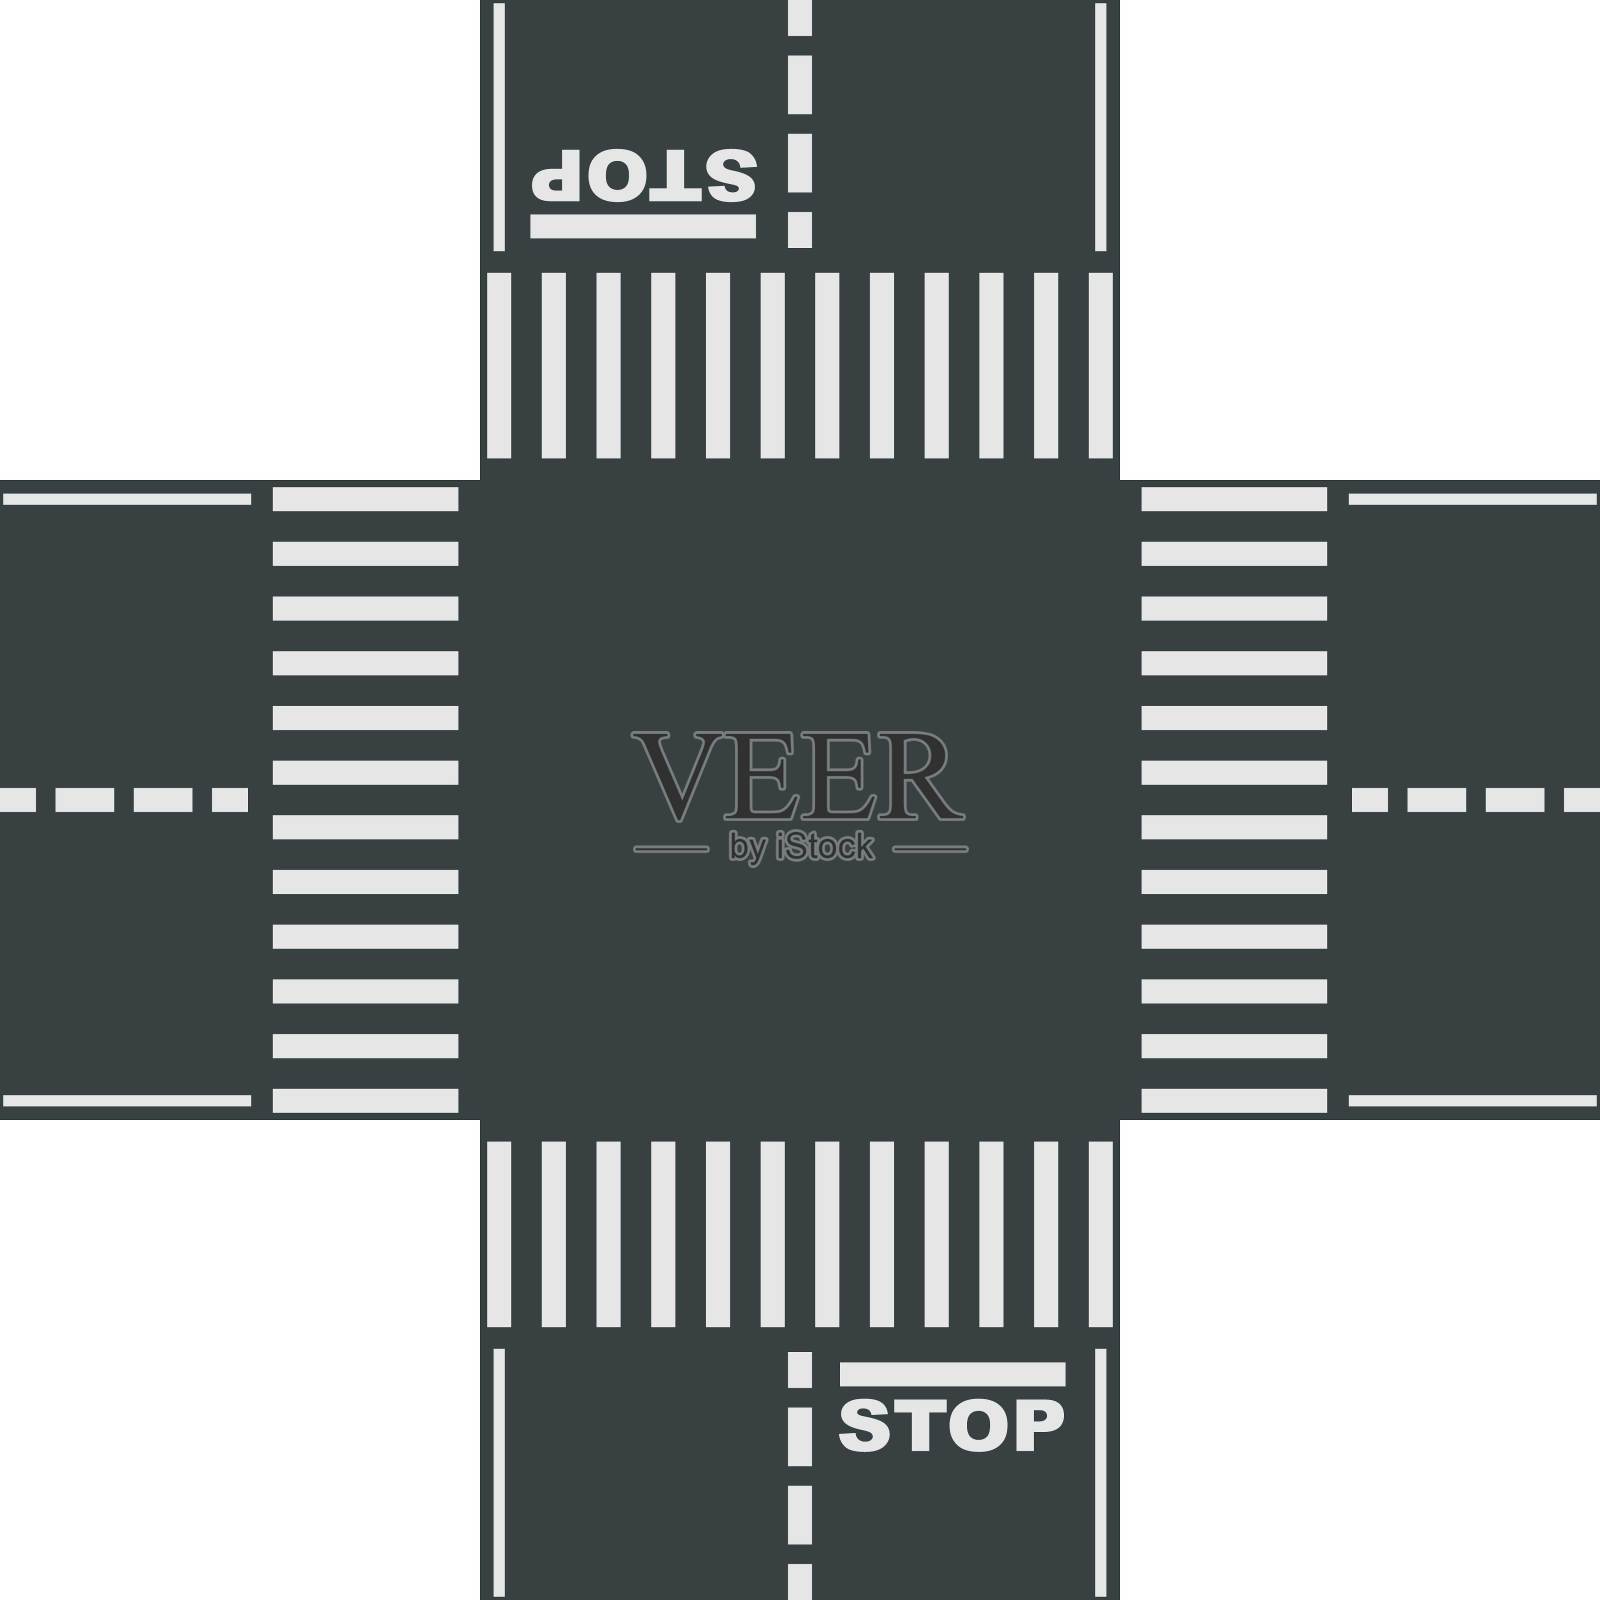 十字路口的标志与道路标记和停止线。设计元素图片